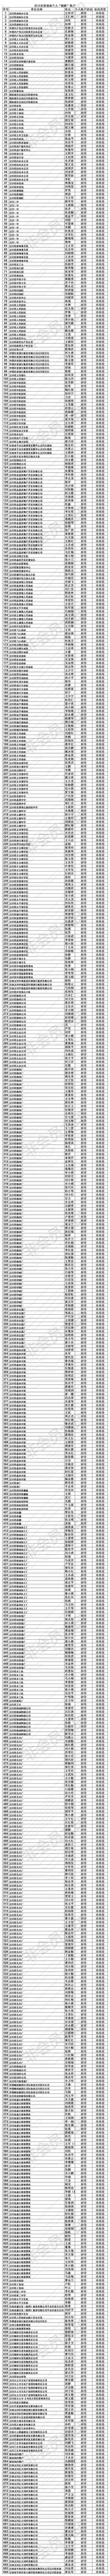 平凉市住房公积金管理中心泾川县管理部关于清理个人 睡眠 账户的公告